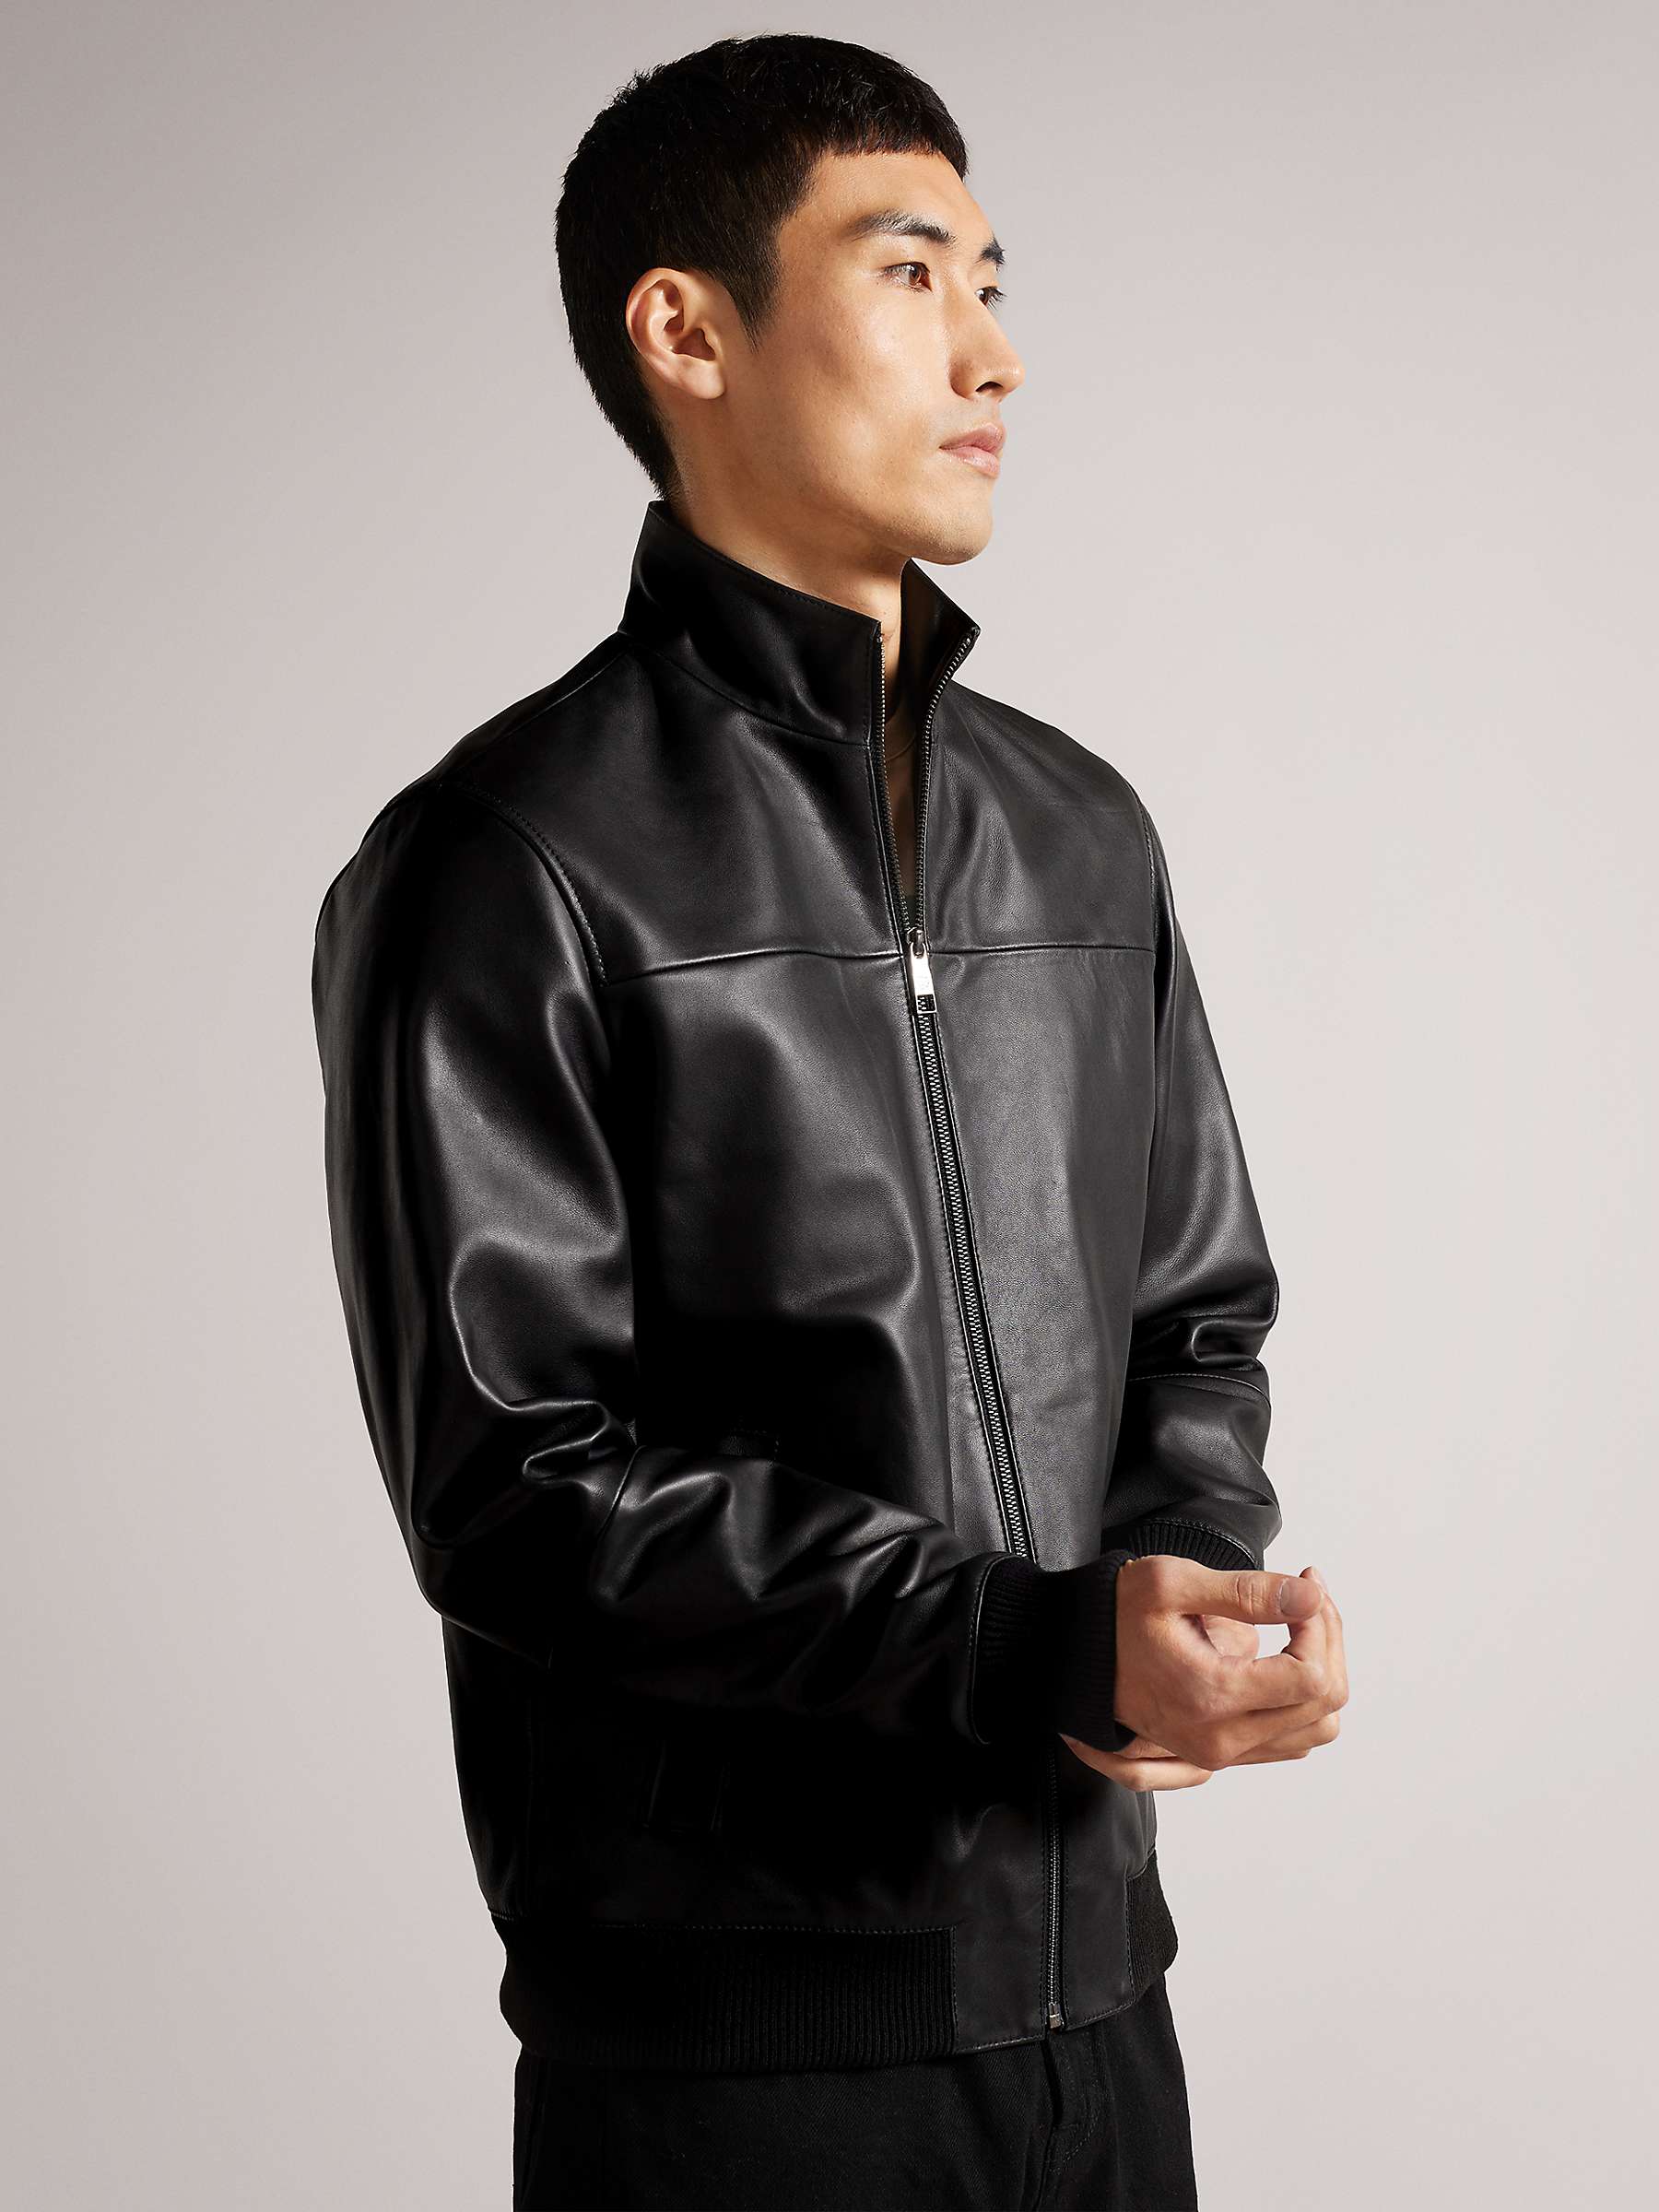 Buy Ted Baker Leadon Leather Jacket, Black Online at johnlewis.com